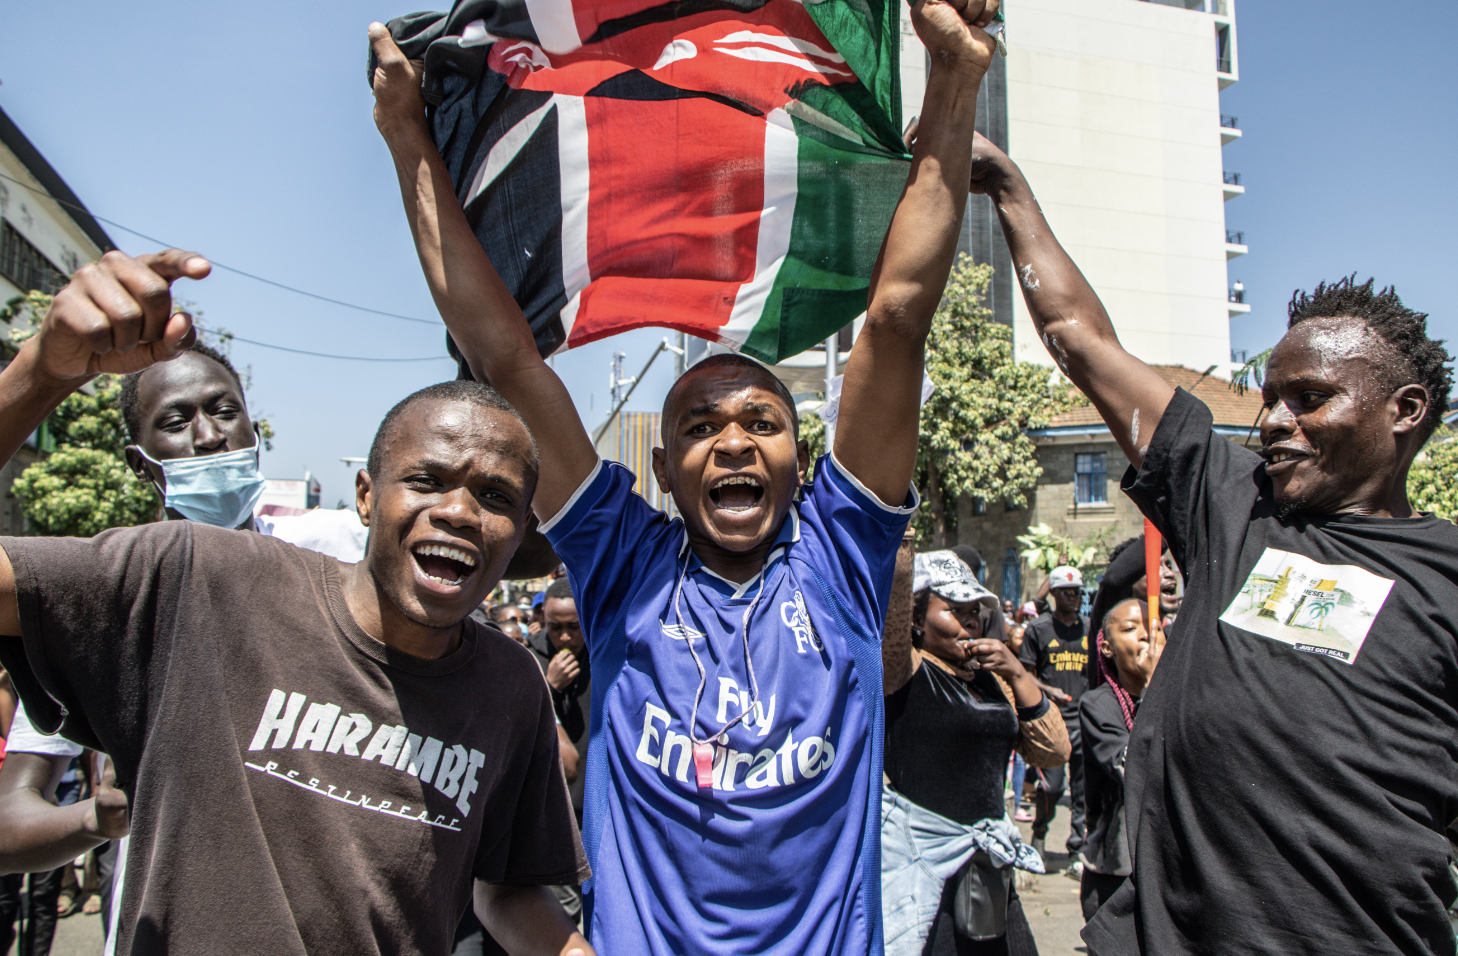 Госдеп призвал правительство Кении проявлять сдержанность во время протестов